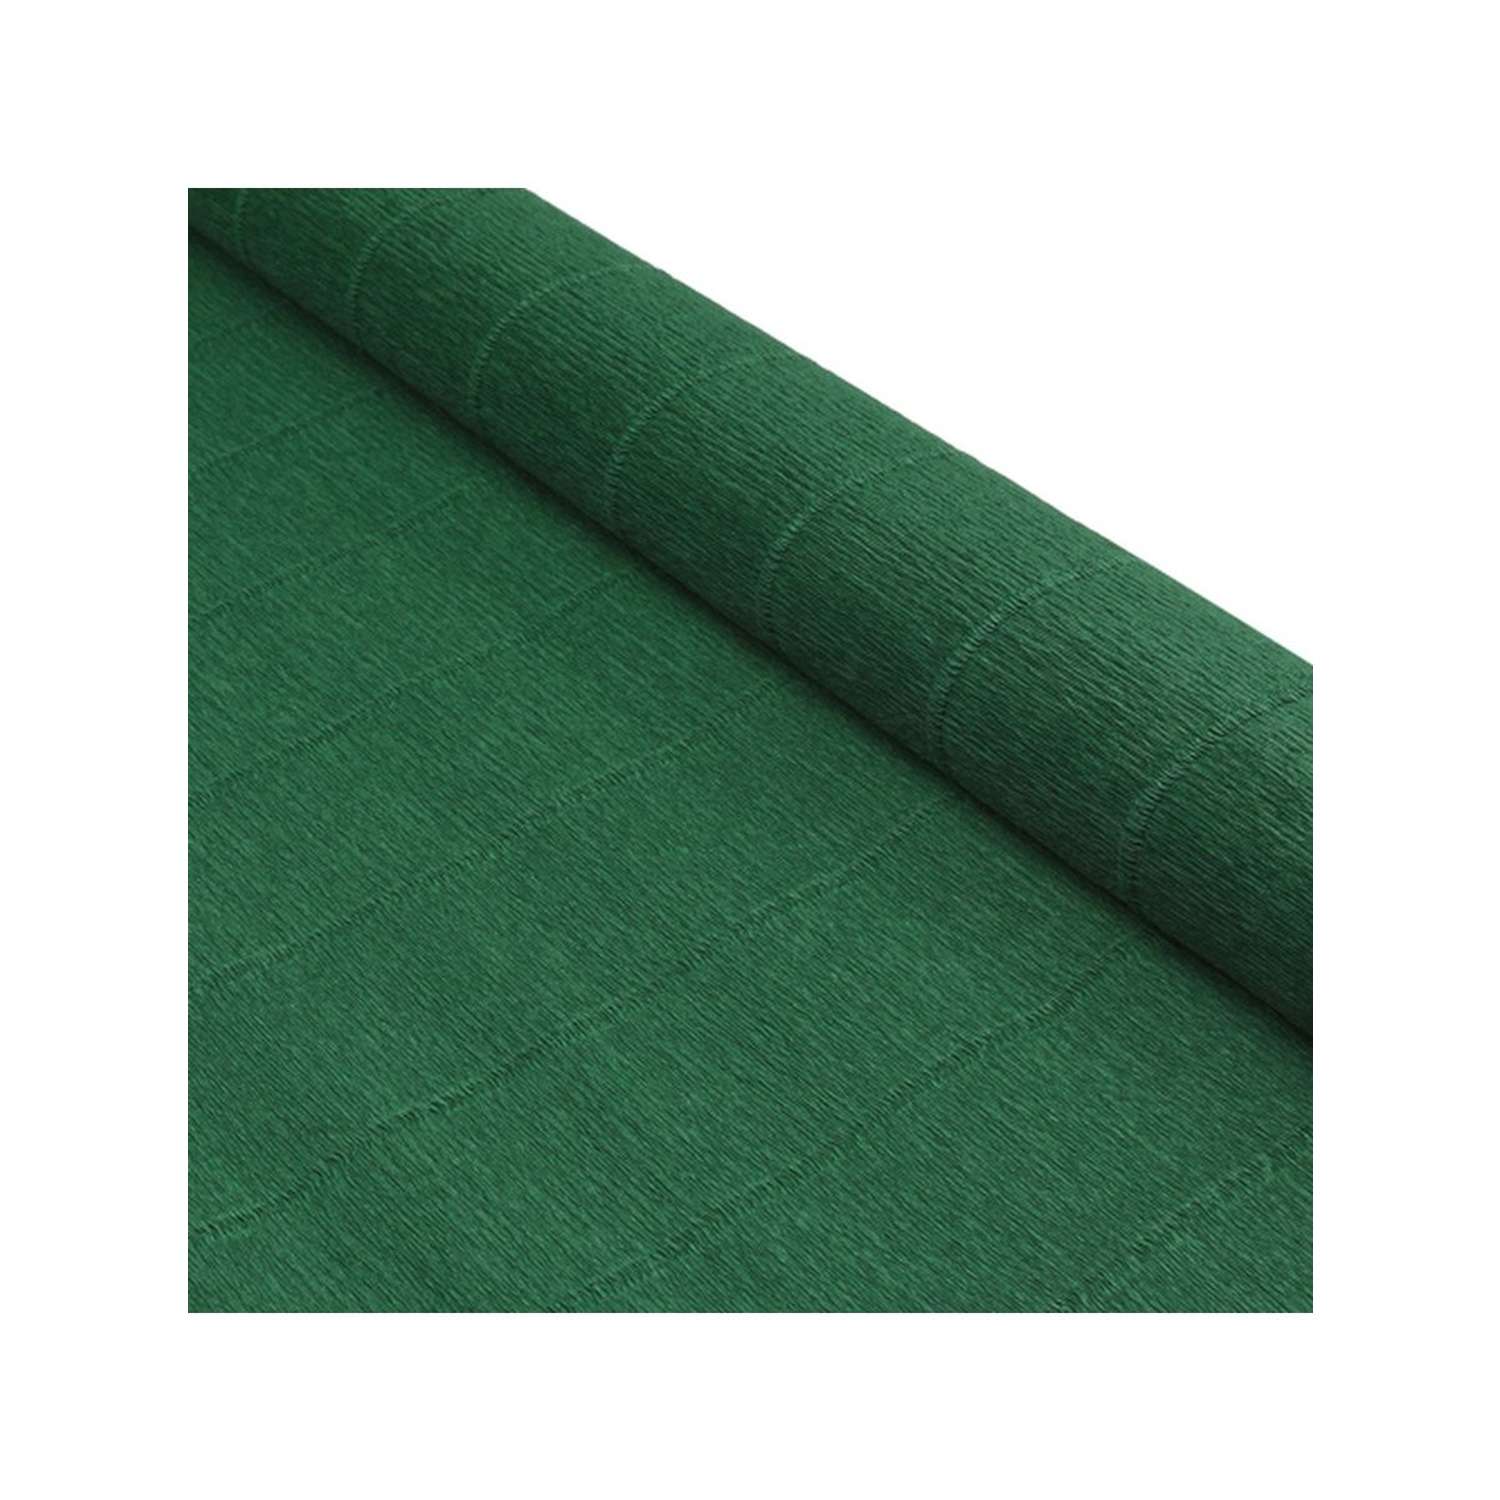 Бумага Айрис гофрированная креповая для творчества 50 см х 2.5 м 180 гр хвойно-зеленая - фото 2